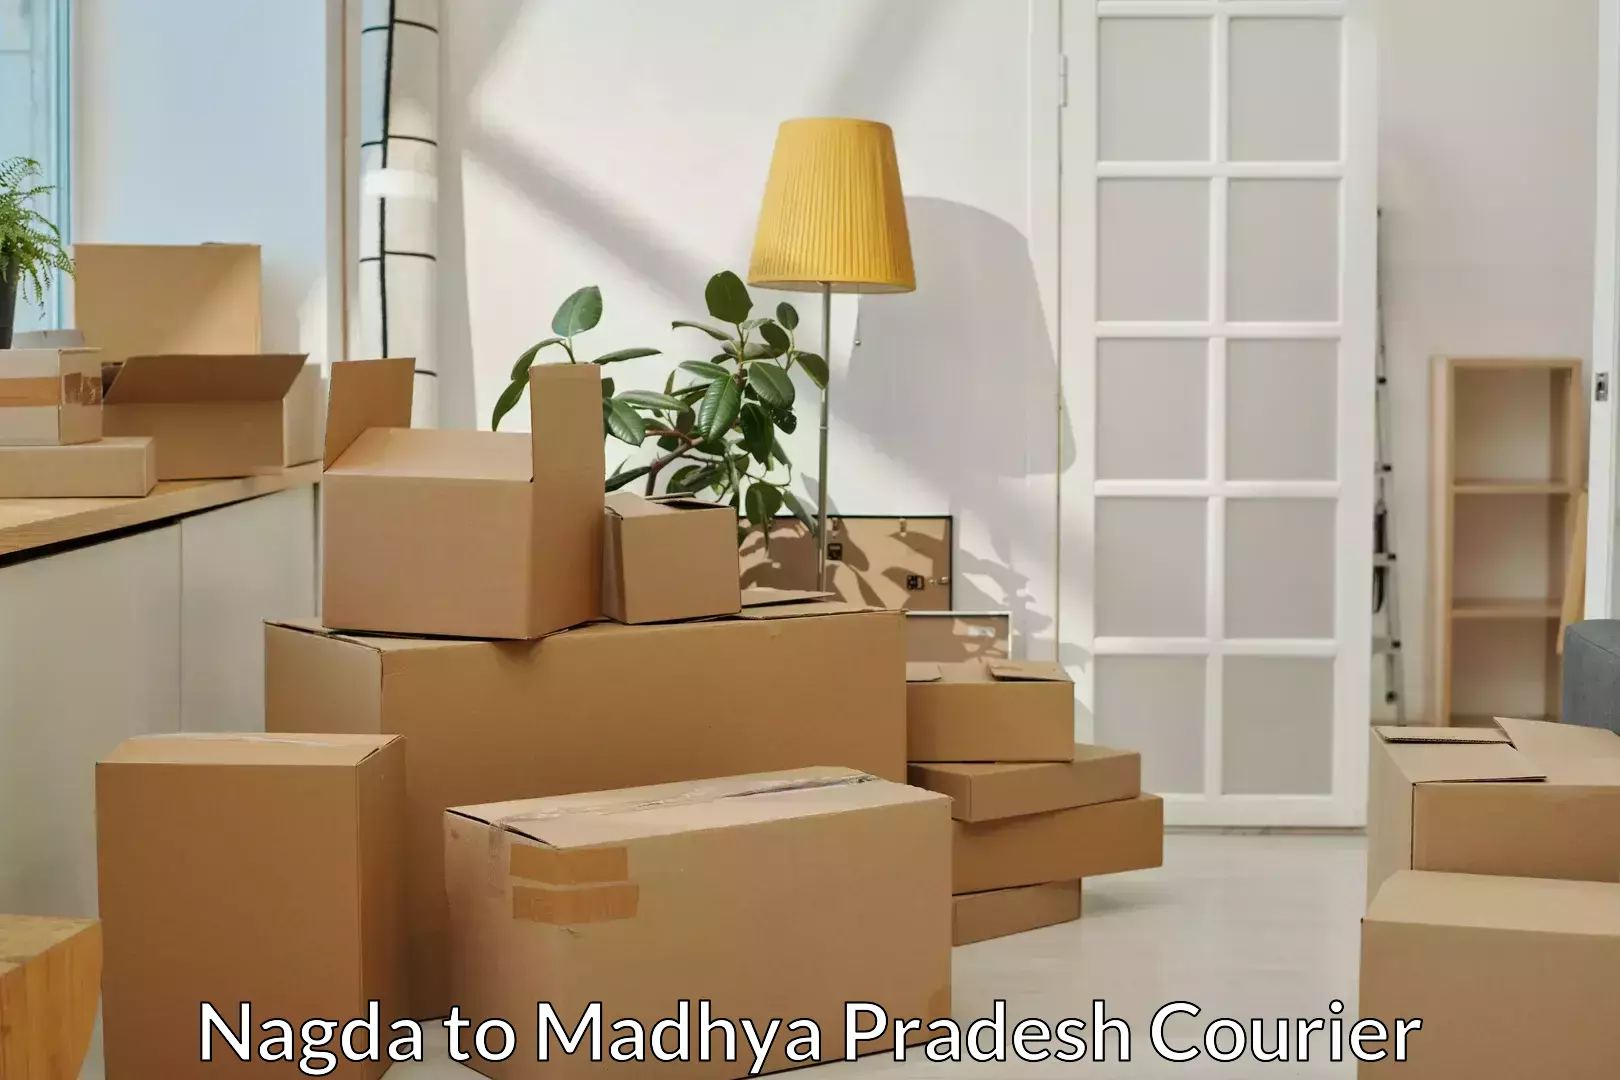 Professional movers and packers Nagda to Nagda